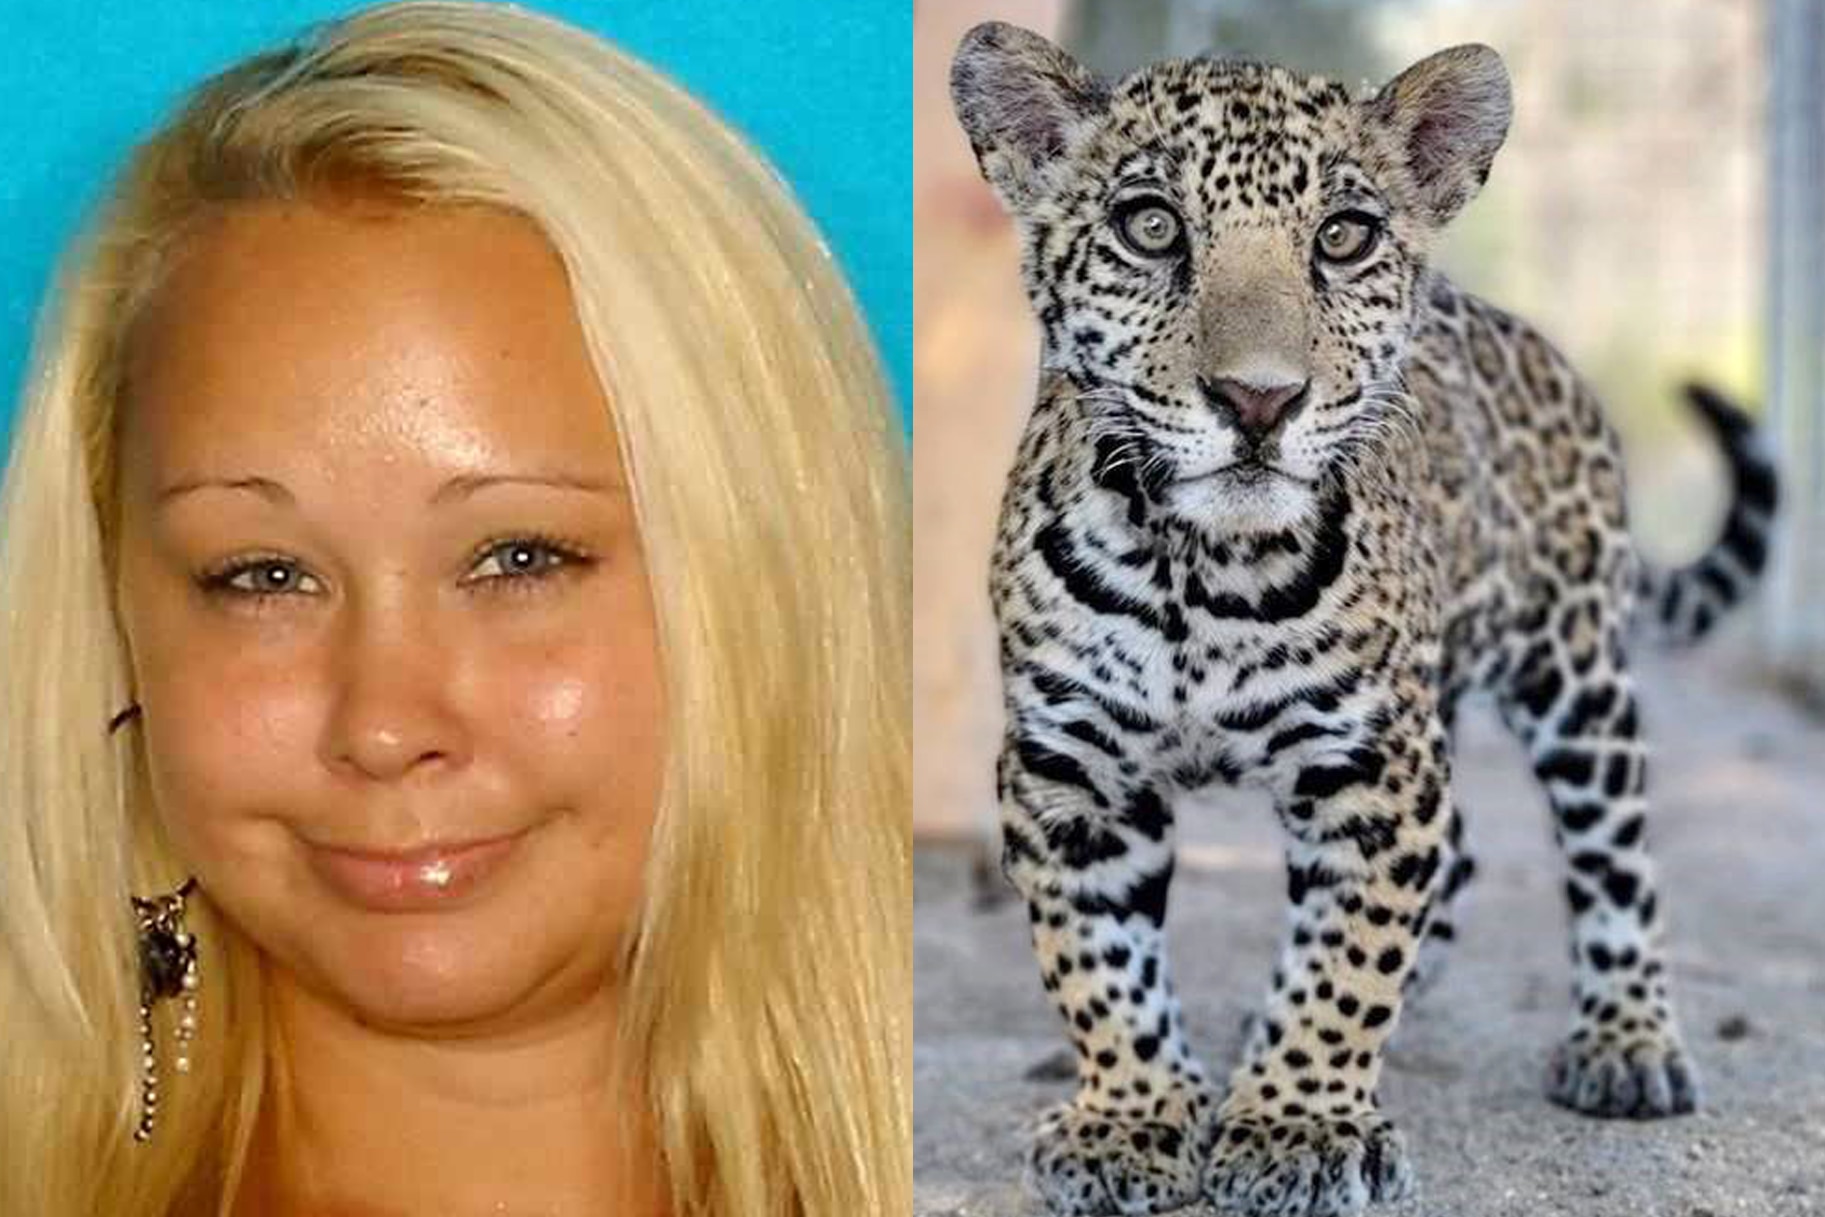 Trisha Meyer AKA "Mimi" and the jaguar cub